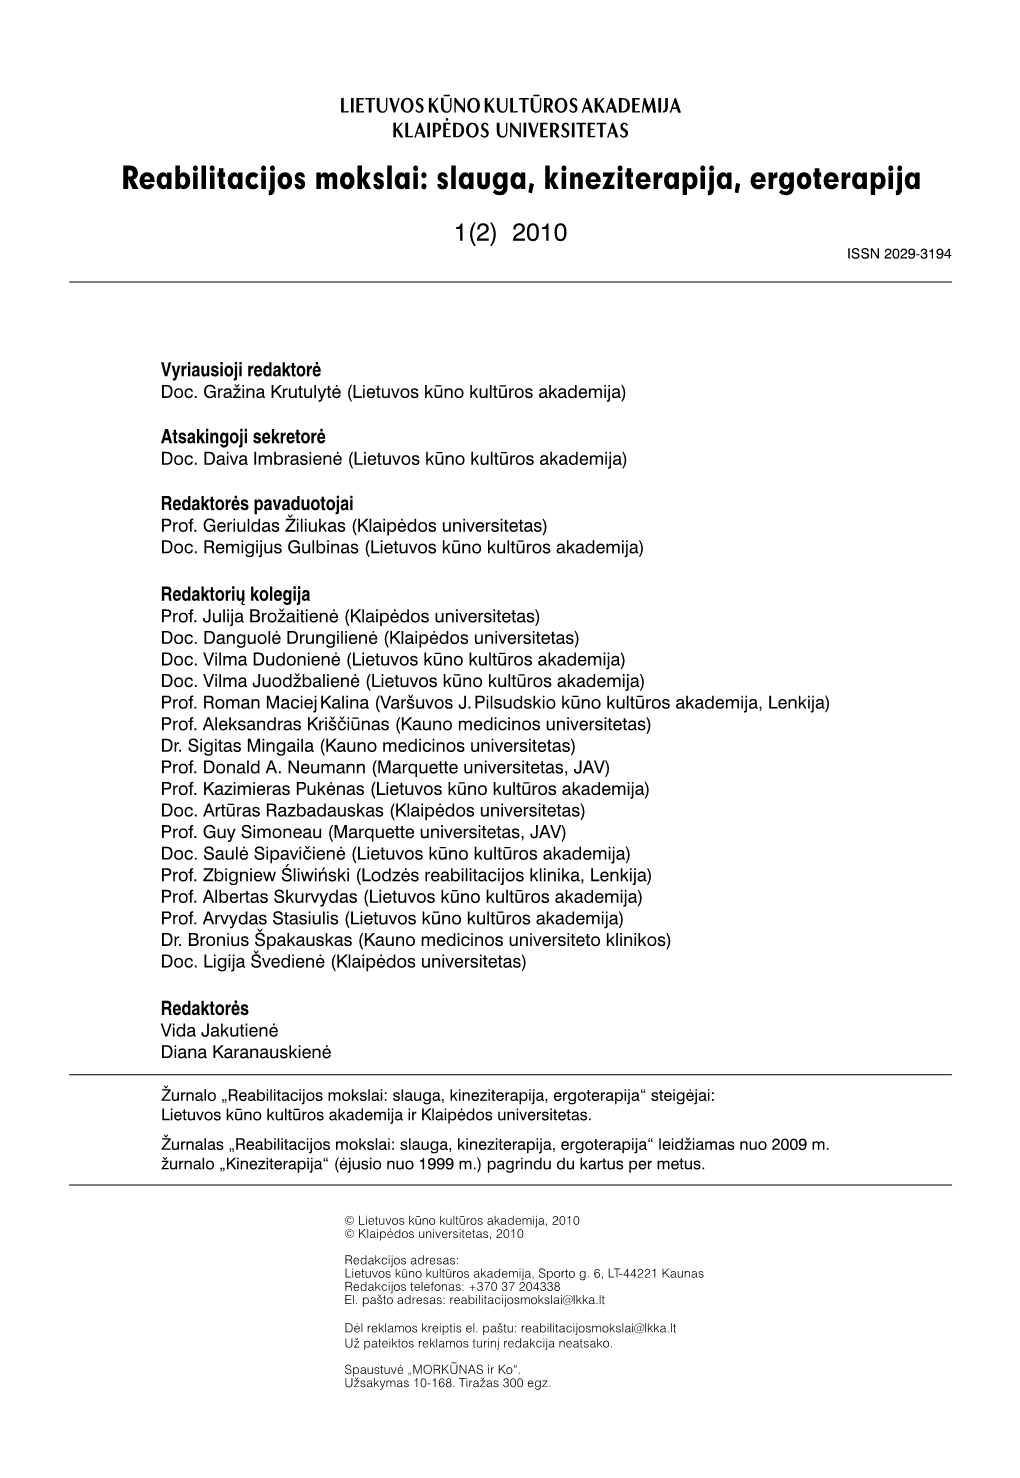 Reabilitacijos Mokslai 2010-1(2) 2010-06-01.Indd